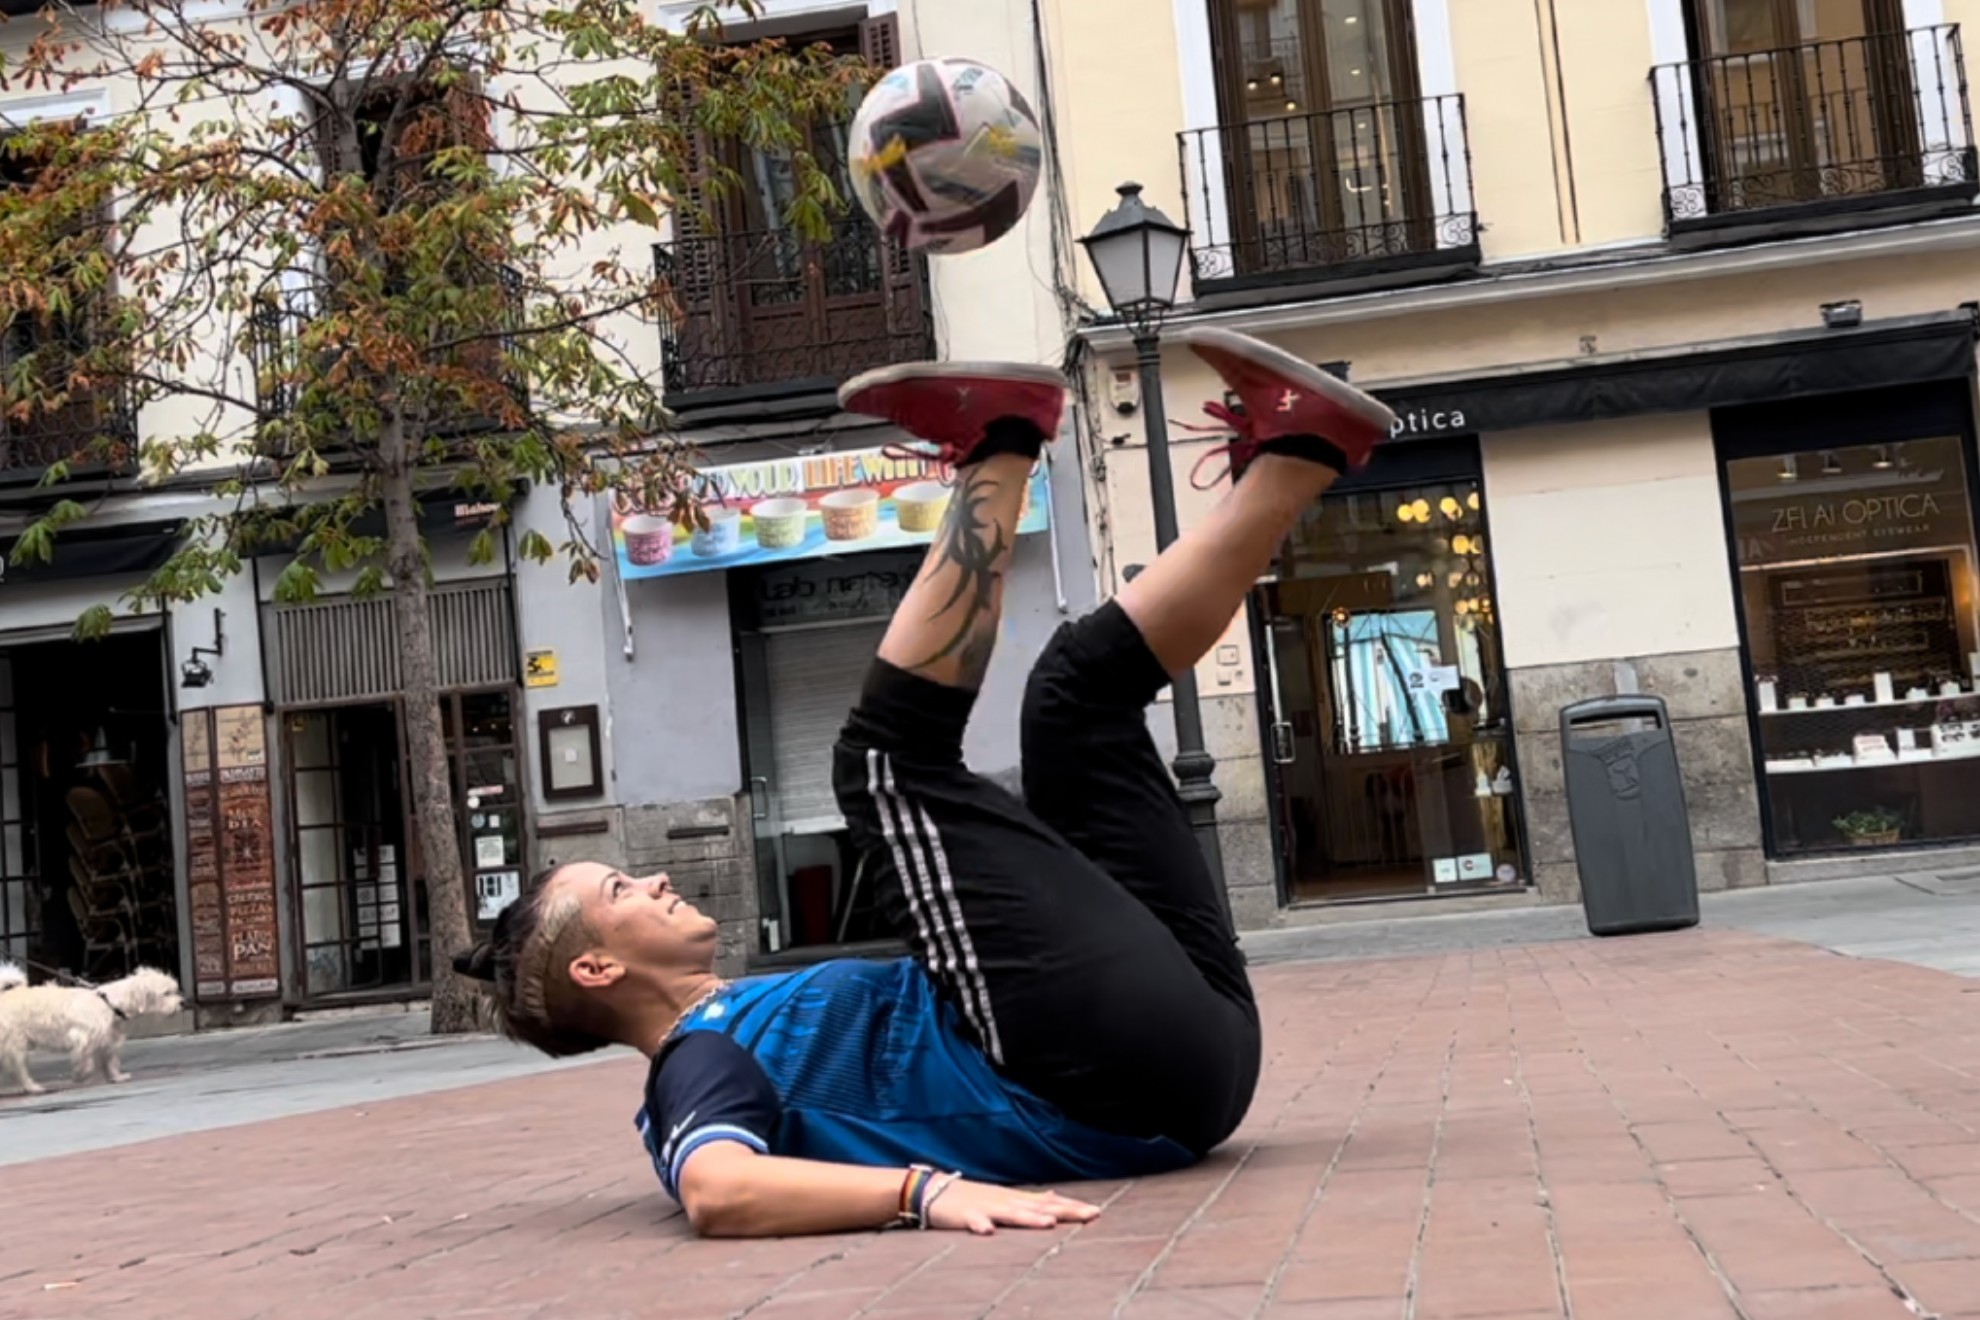 Paloma Pujol, entrenando en una plaza madrileña / Vídeo: Alberto Ibáñez; Edición: Rodolfo Espinosa